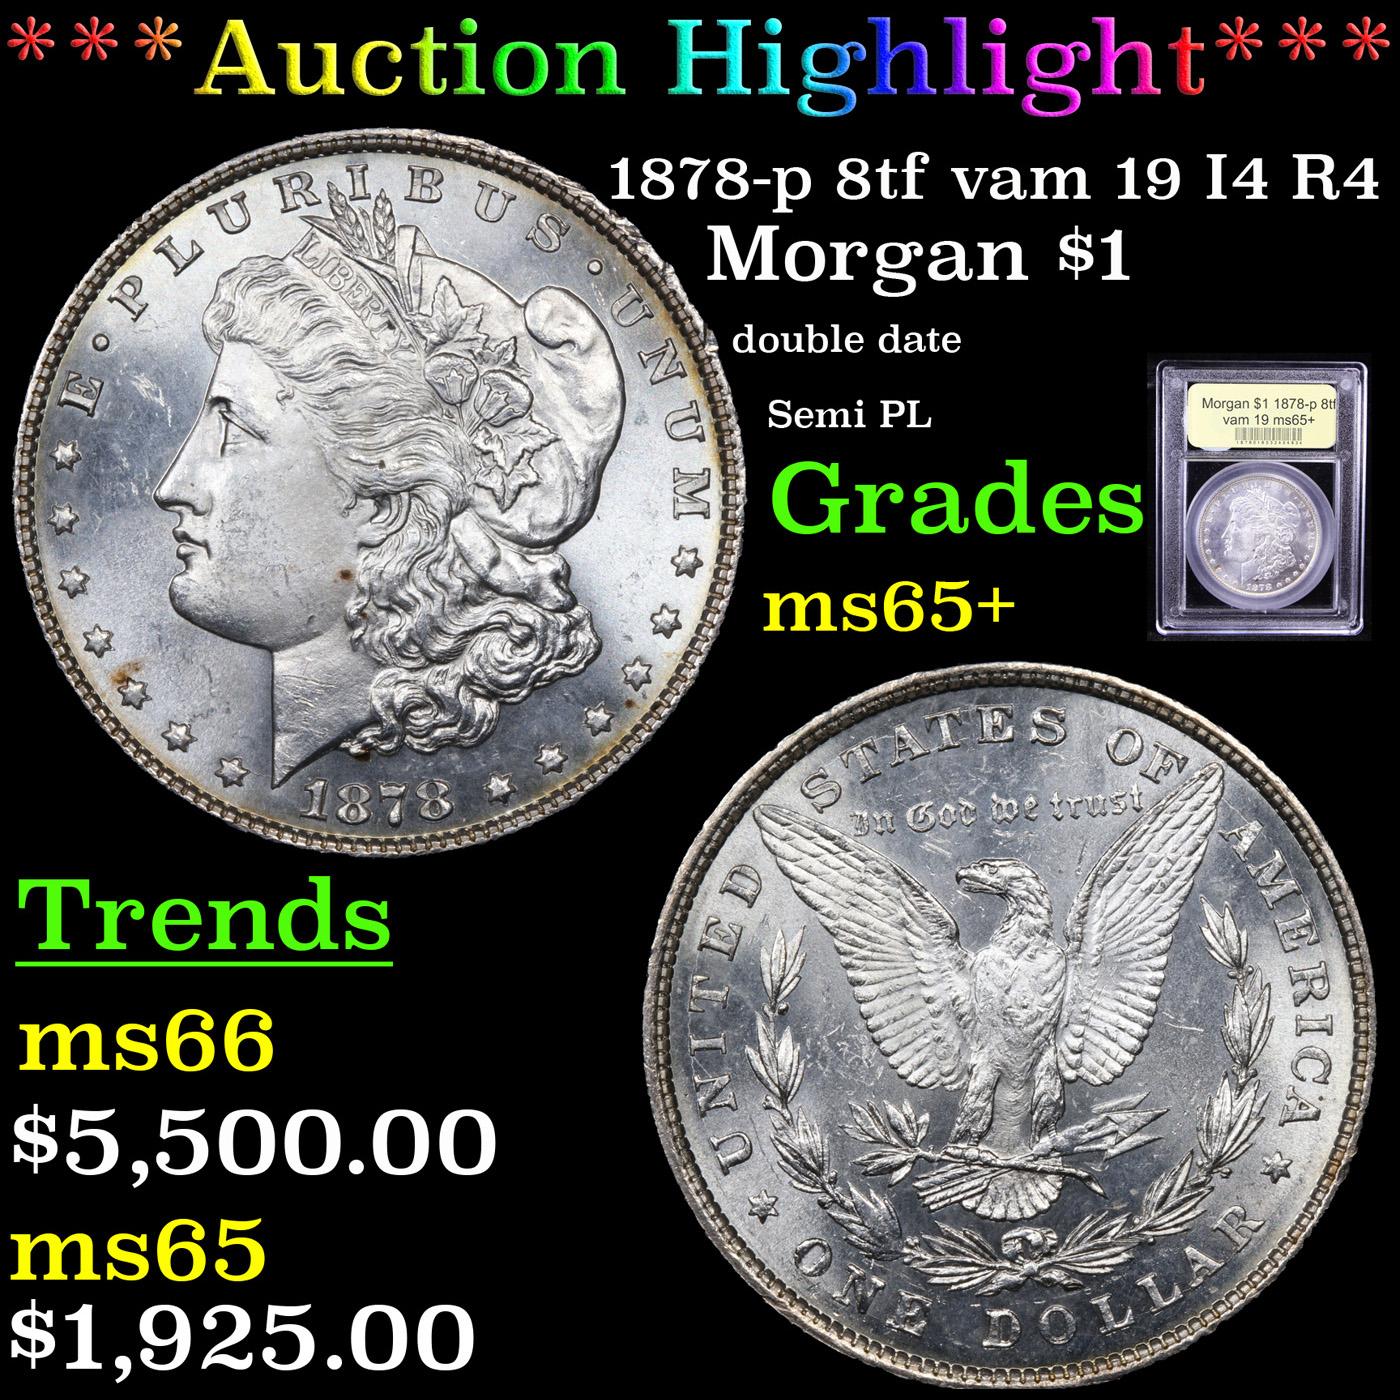 ***Auction Highlight*** 1878-p 8tf vam 19 I4 R4 Morgan Dollar $1 Graded GEM+ Unc By USCG (fc)